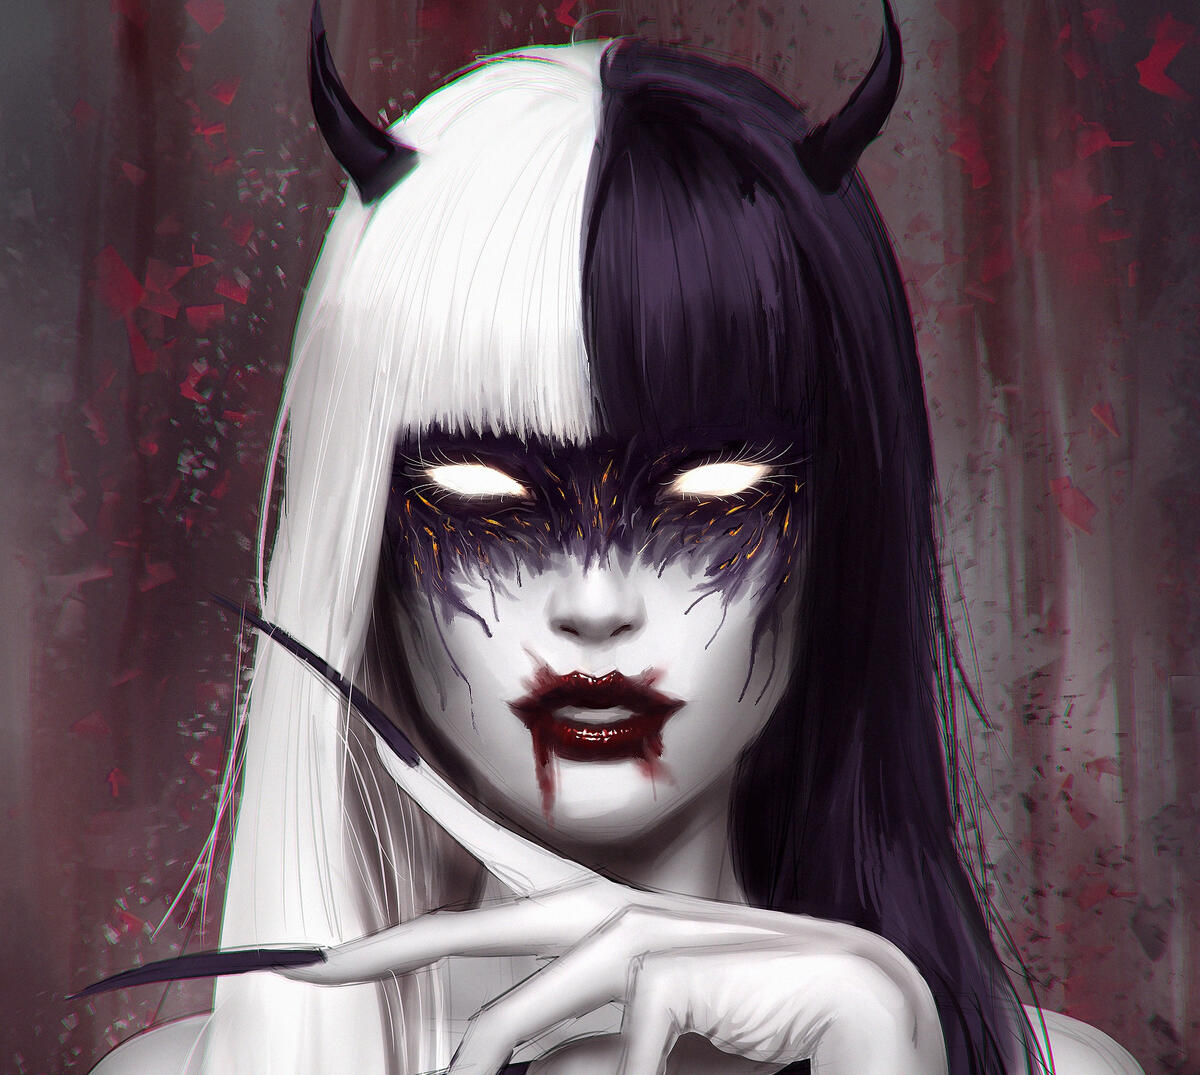 Vampire Girl in Black and White